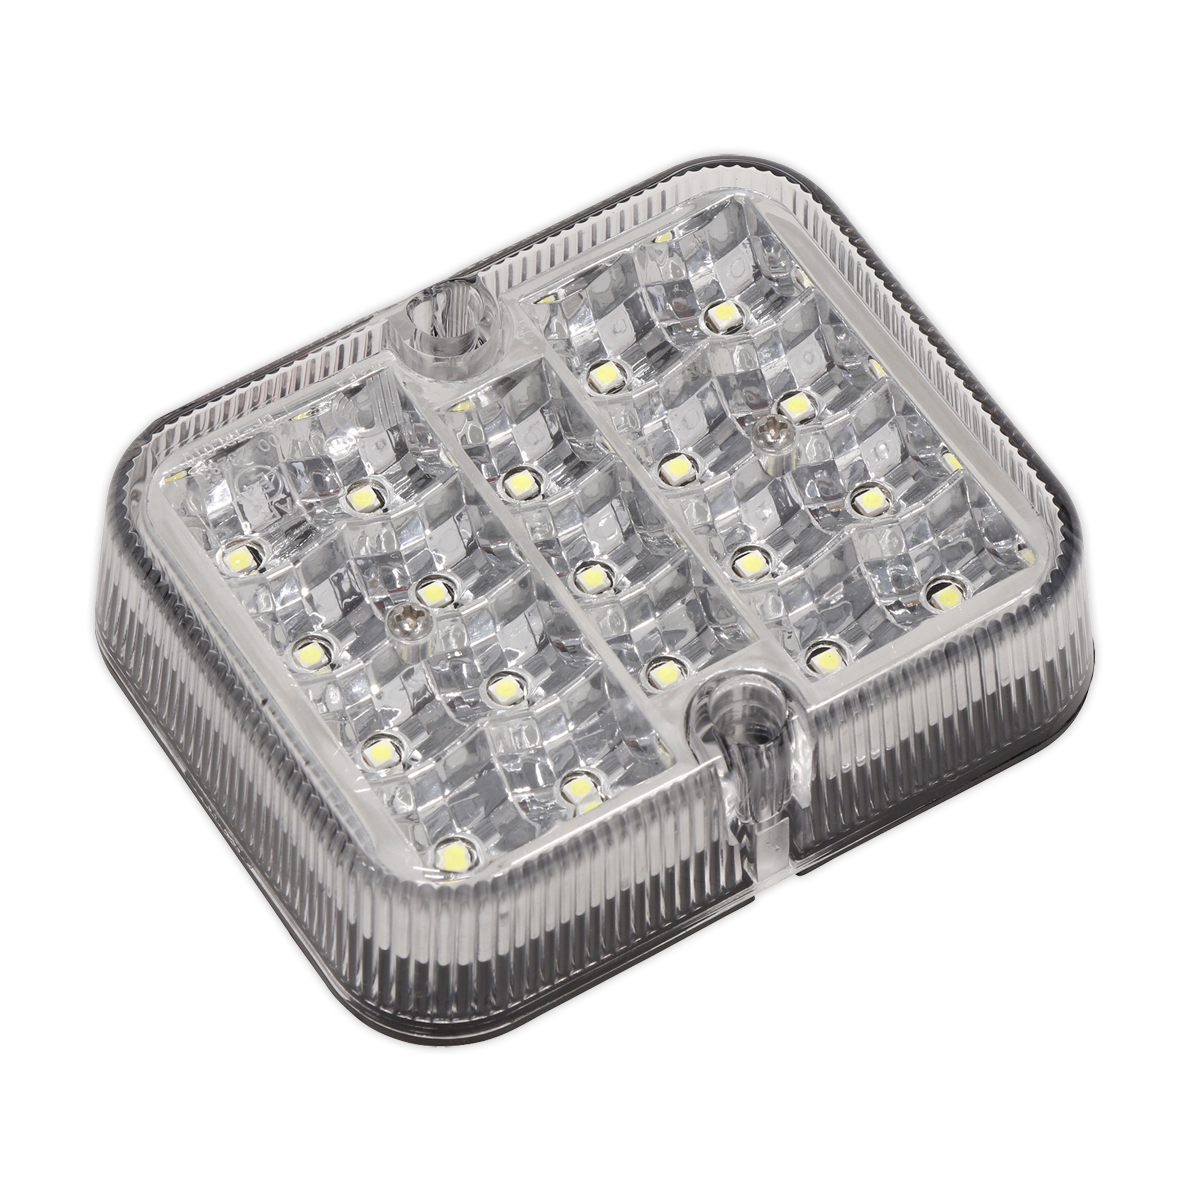 Reverse Lamp 12-24V SMD LED